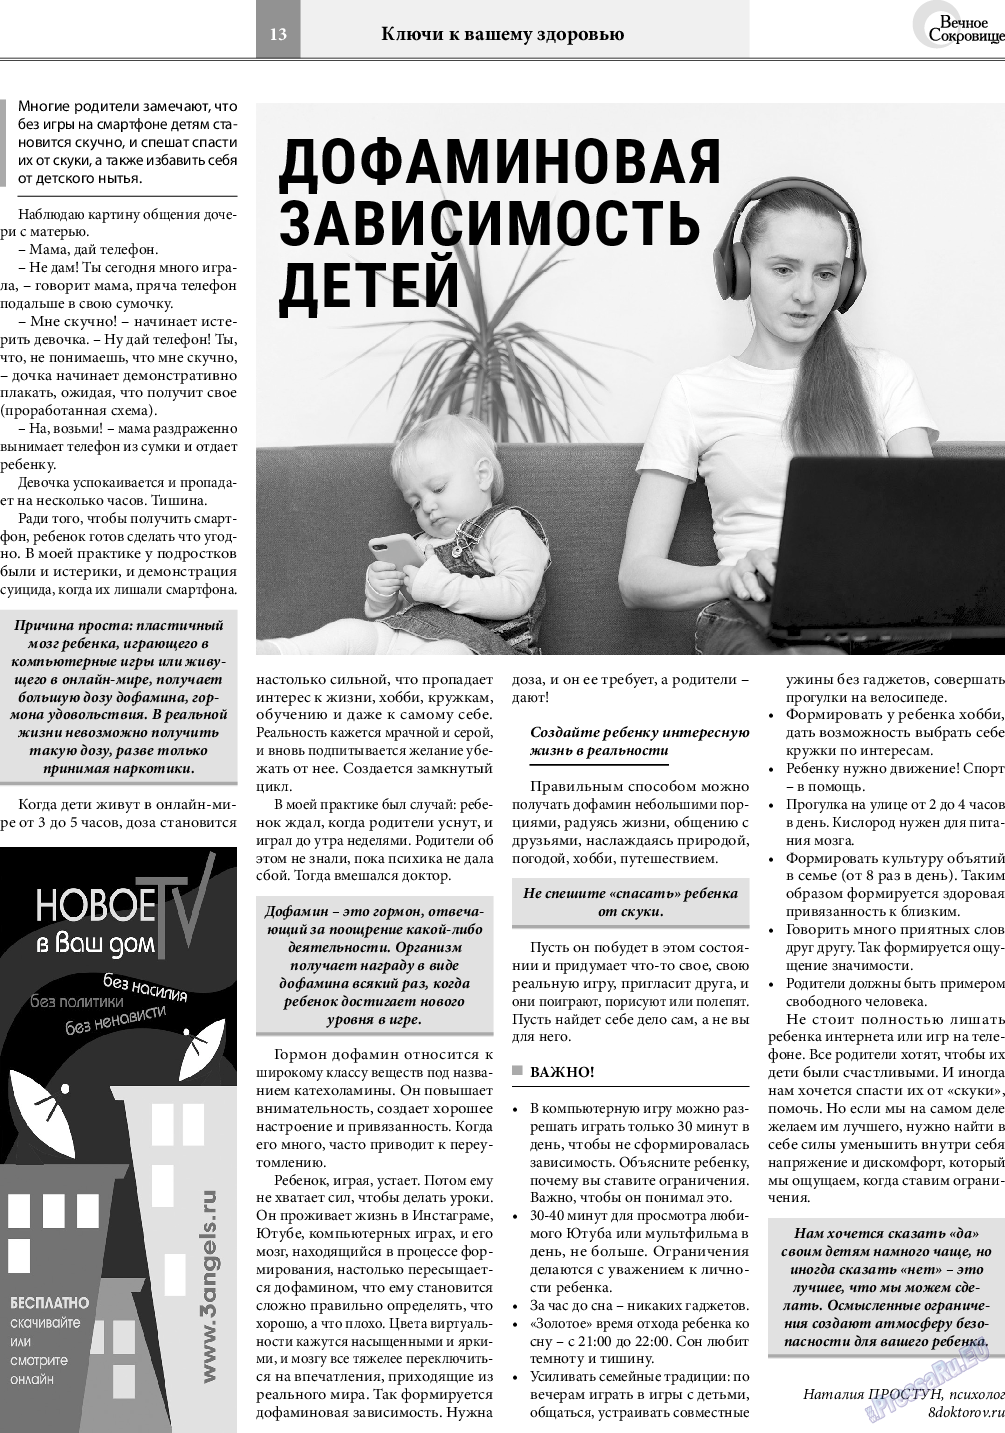 Вечное сокровище, газета. 2021 №4 стр.13